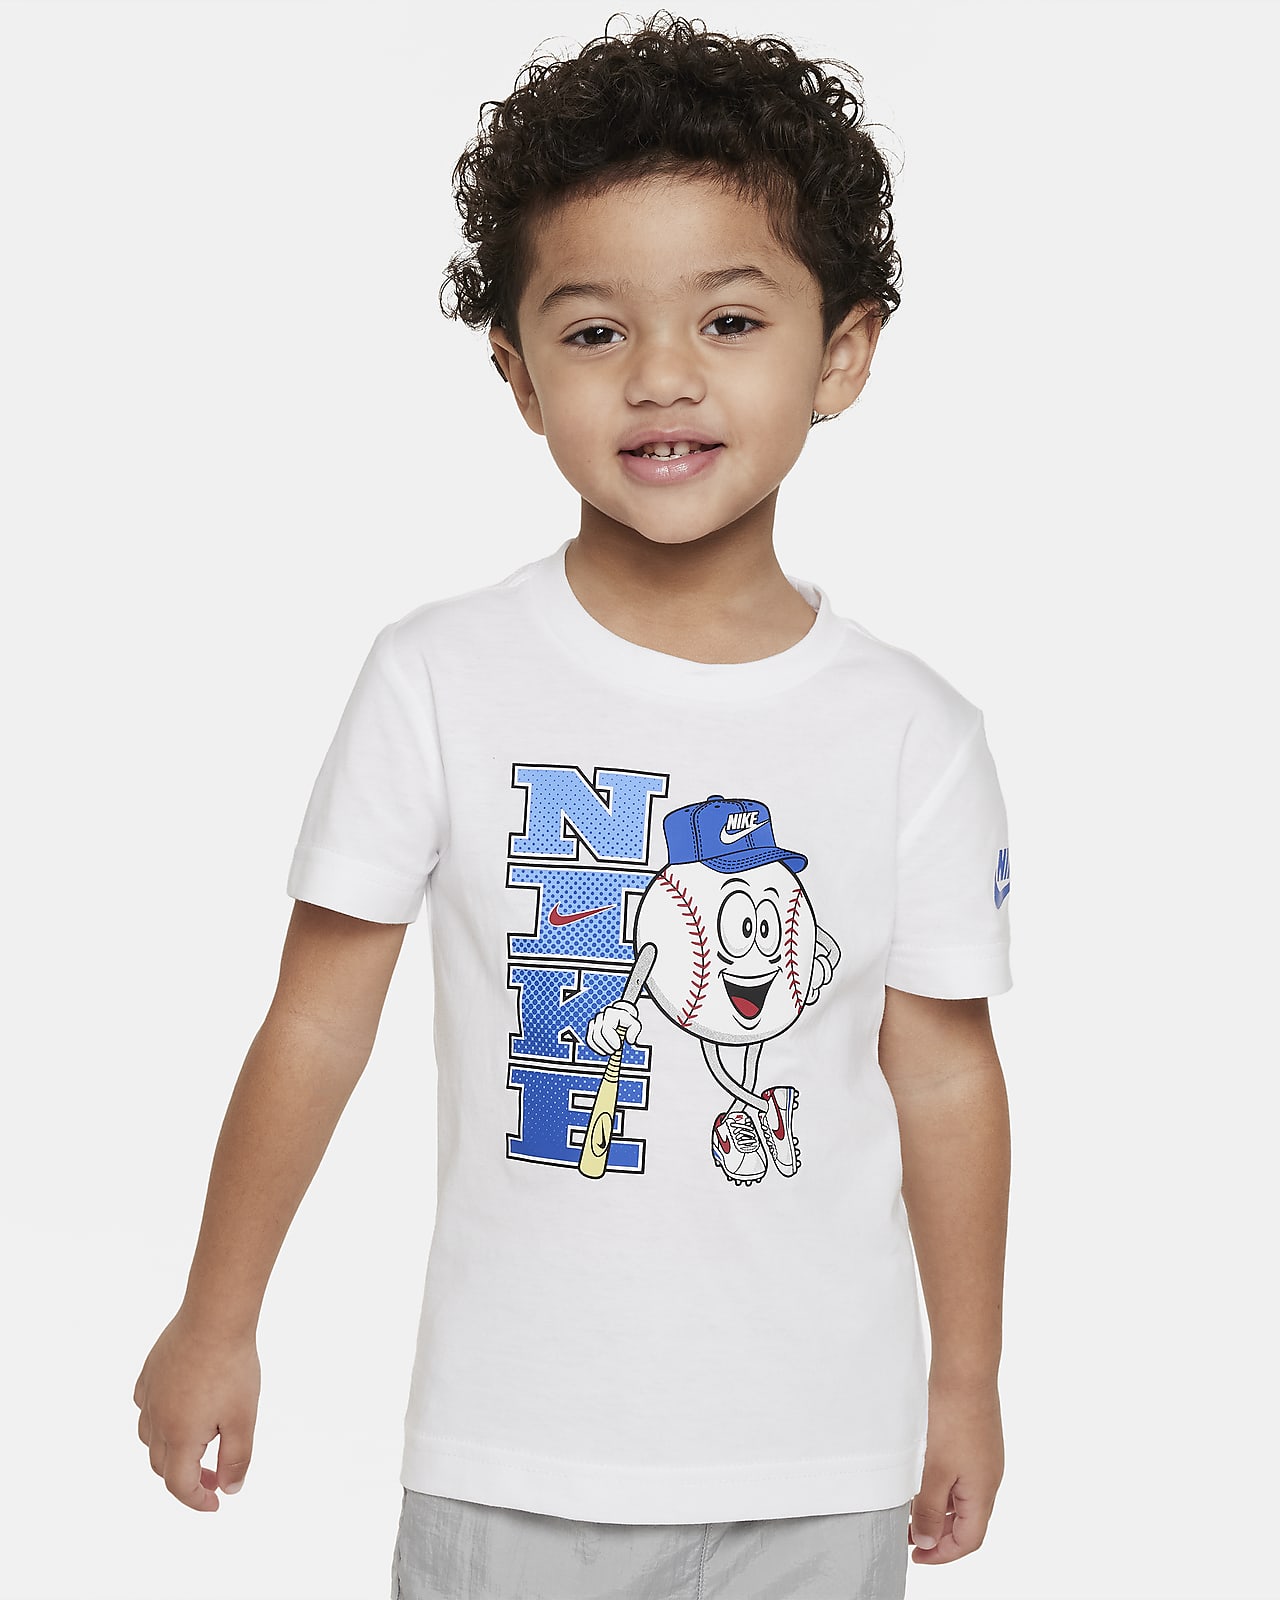 Nike Toddler Graphic T-Shirt